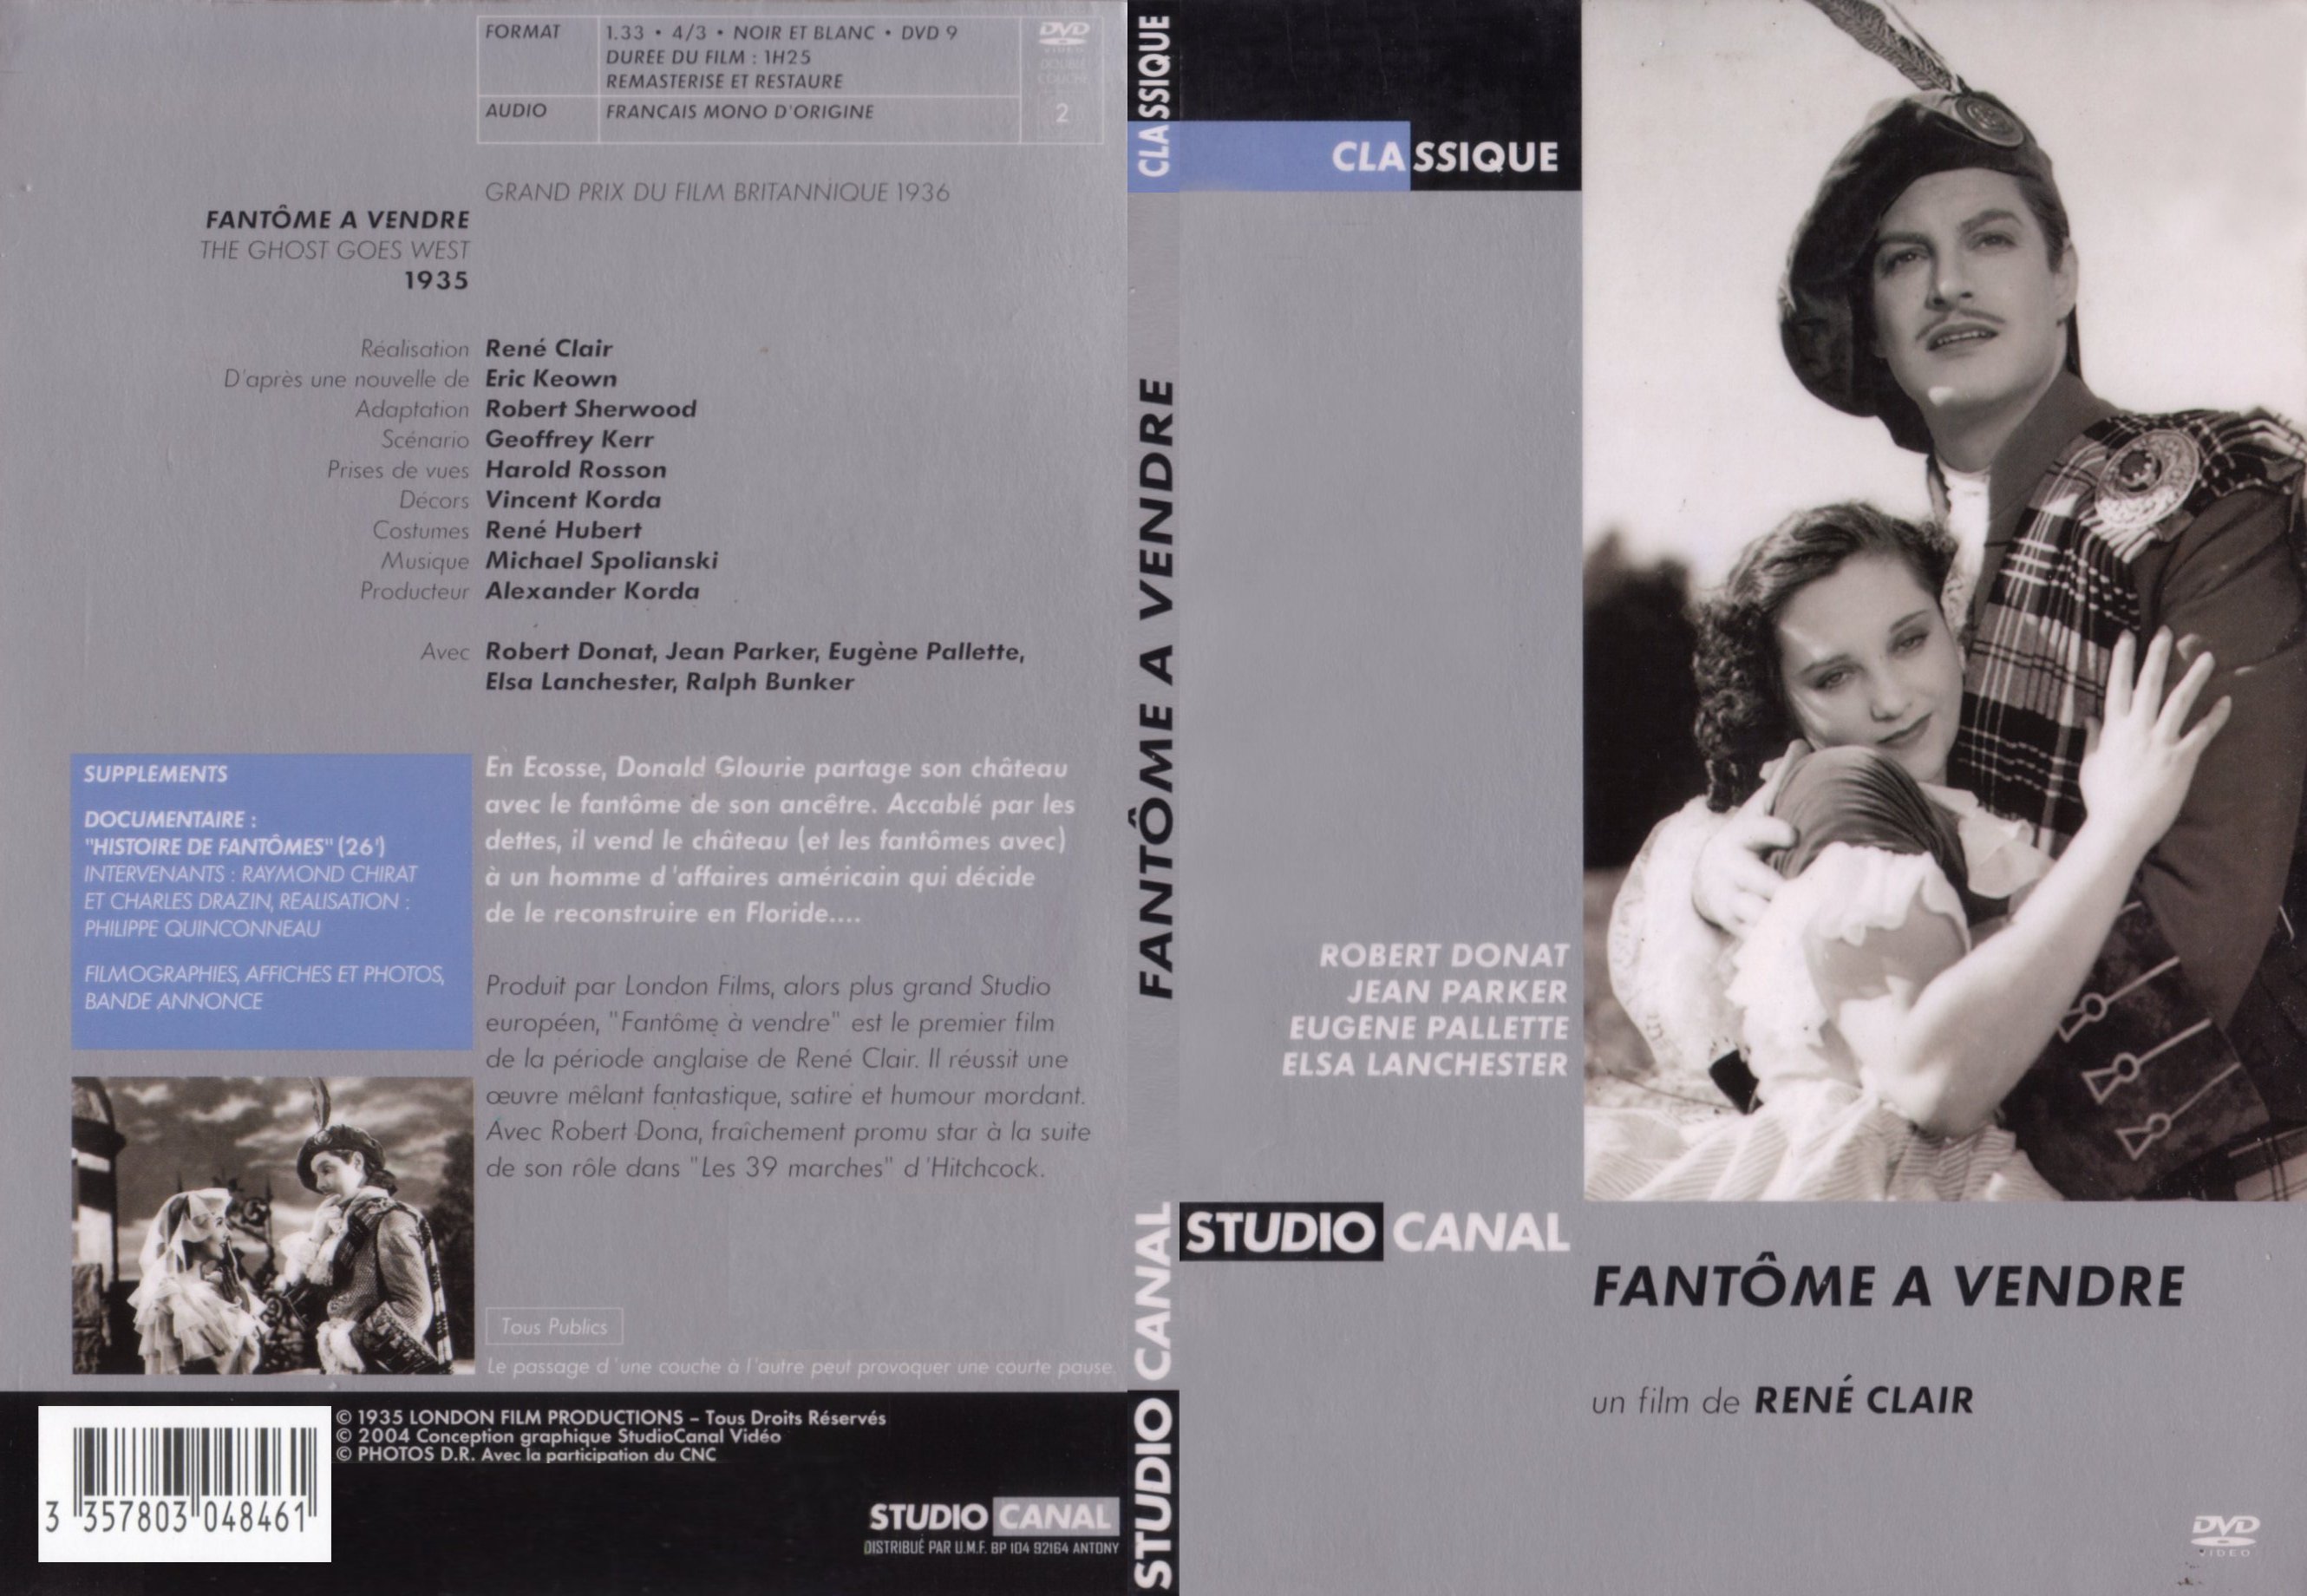 Jaquette DVD Fantome  vendre - SLIM